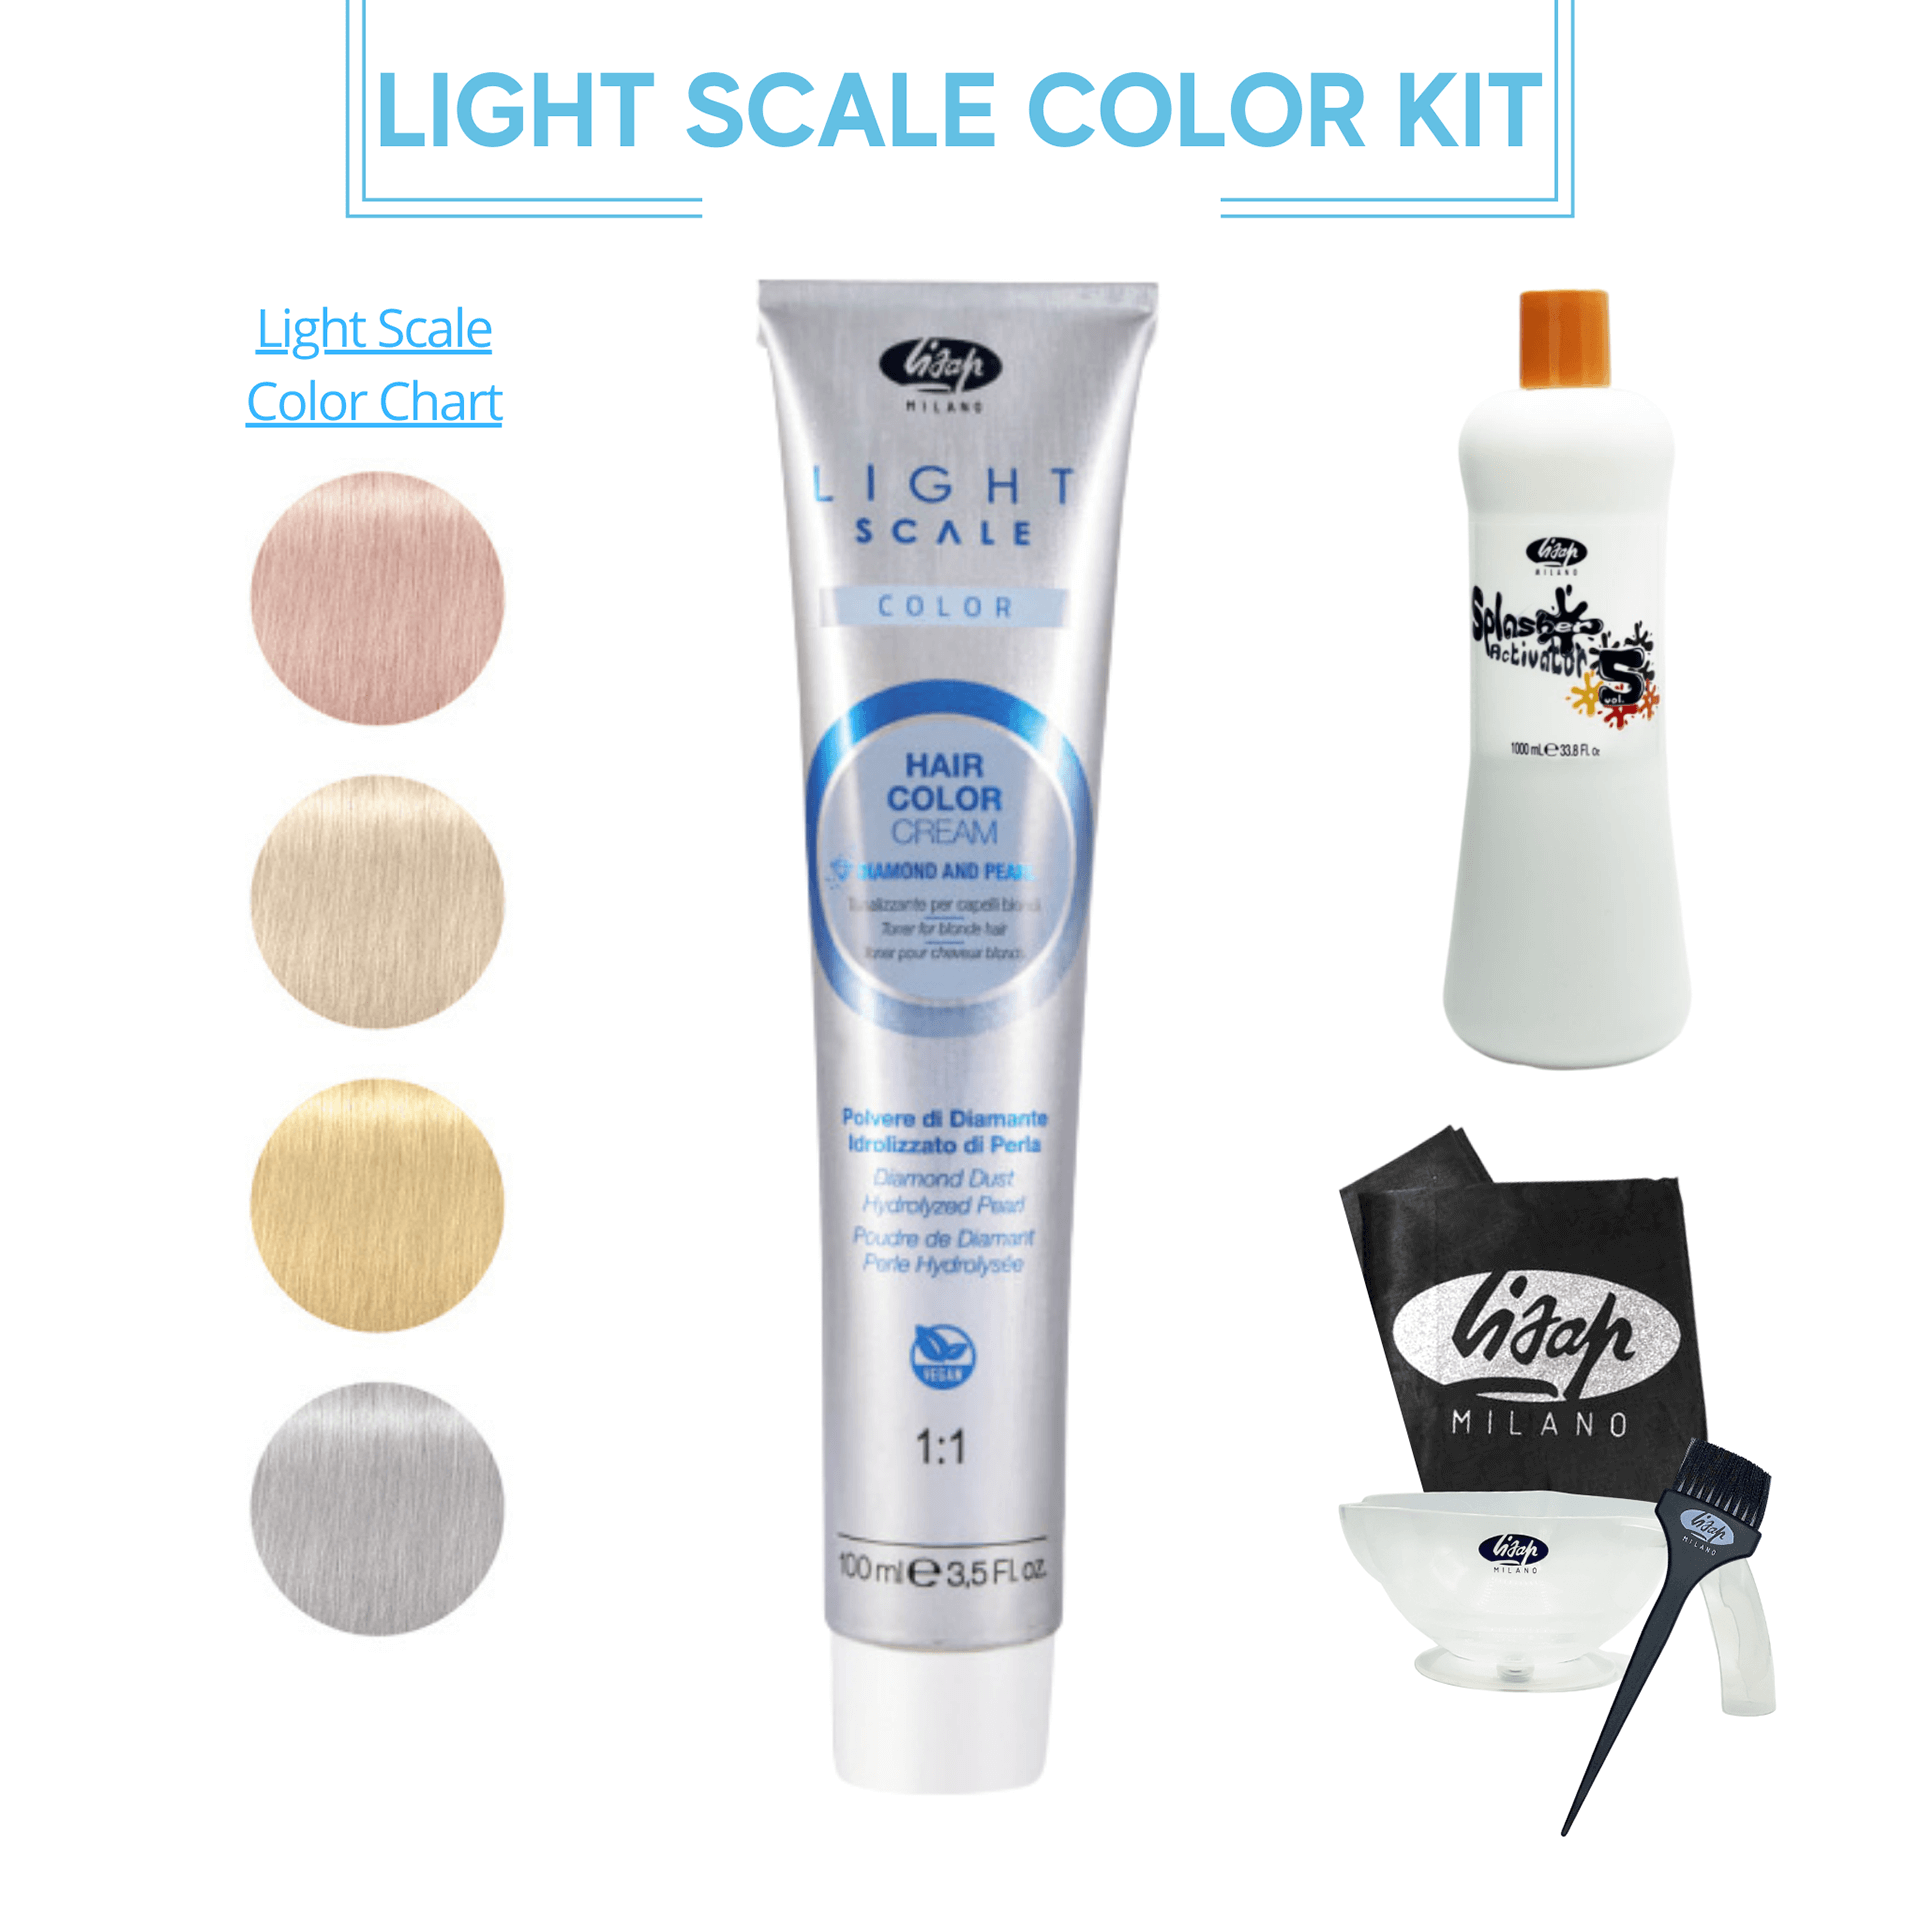 Light Scale Color Kit - Shop Lisap USA